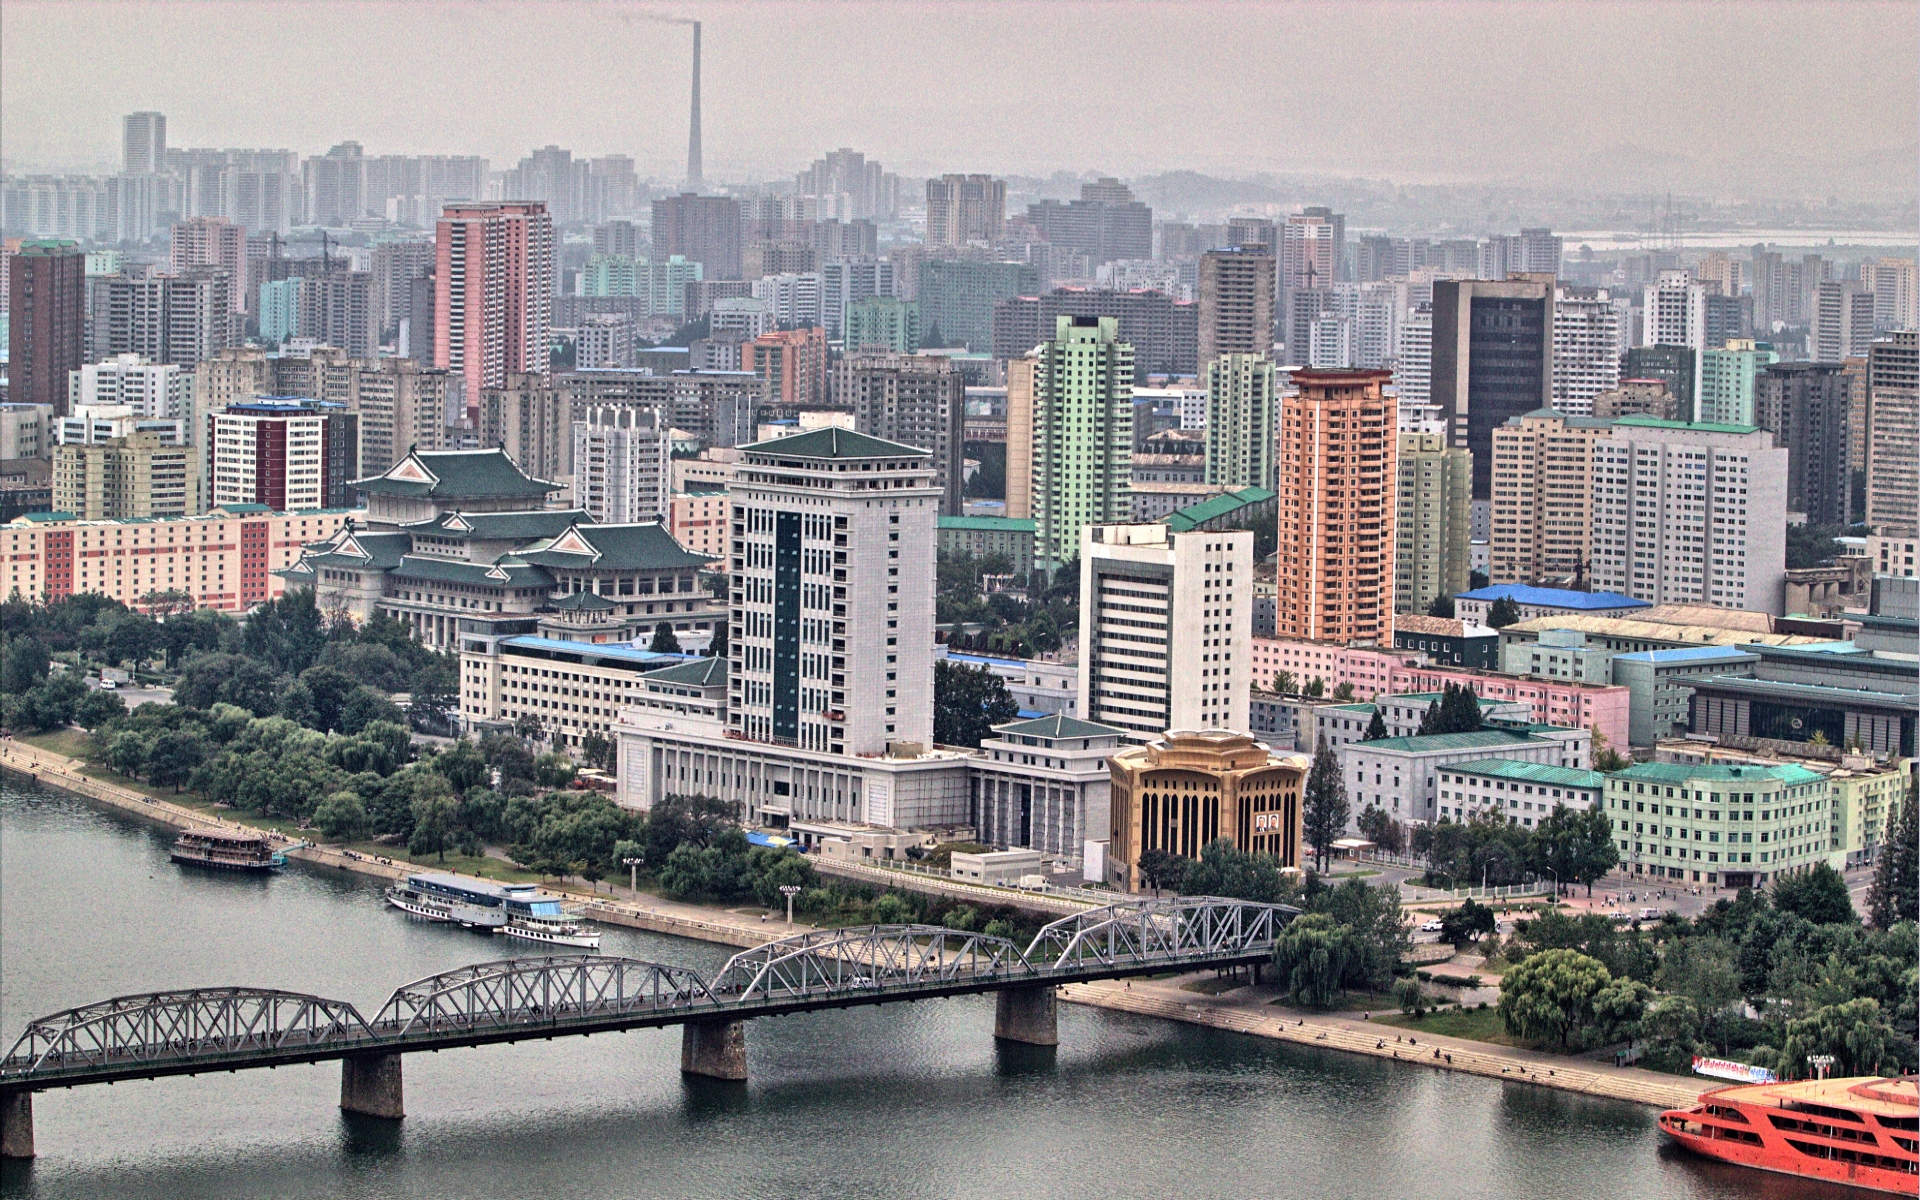 Популярные заставки и фоны Пхеньян на компьютер